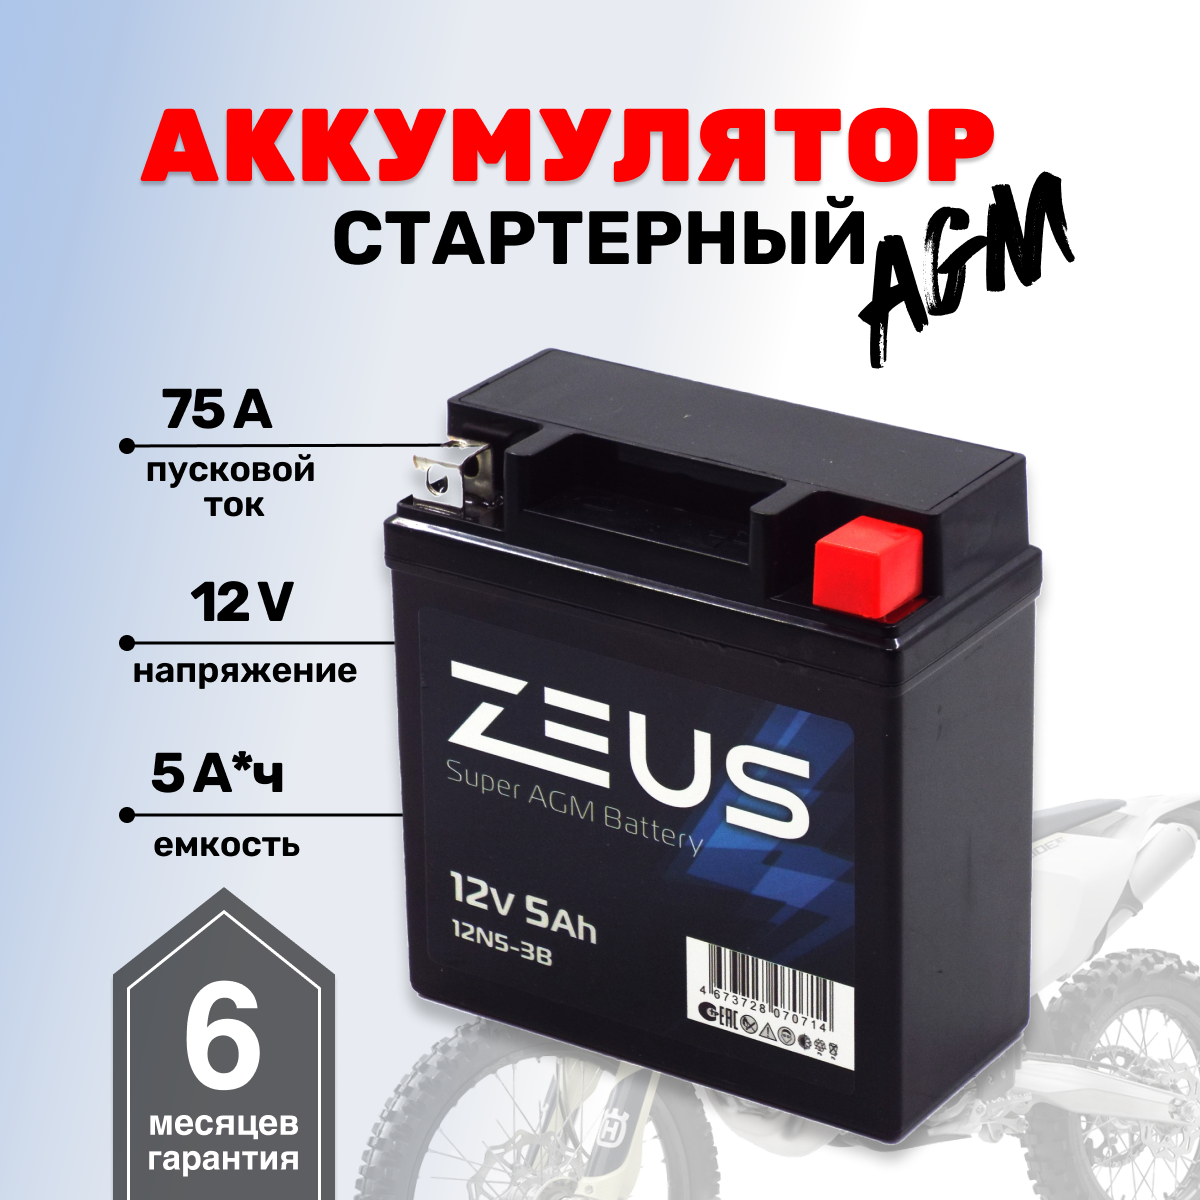 Аккумулятор стартерный для мотоцикла/квадроцикла/скутера ZEUS SUPER AGM 5 Ач о. п. Обратная полярность (12N5-3B)